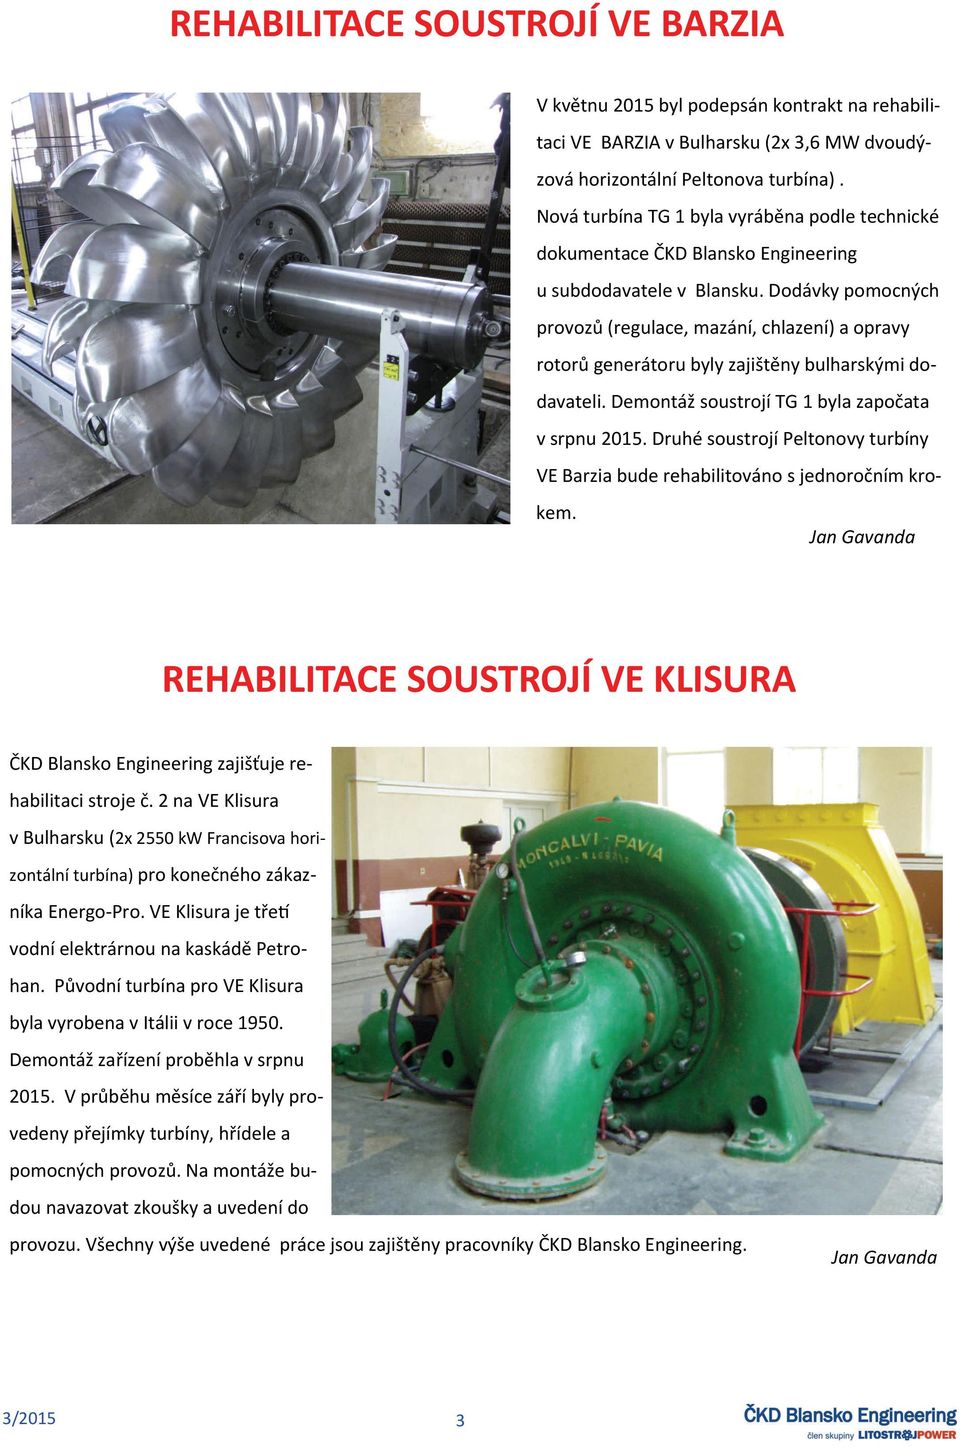 Dodávky pomocných provozů (regulace, mazání, chlazení) a opravy rotorů generátoru byly zajištěny bulharskými dodavateli. Demontáž soustrojí TG 1 byla započata v srpnu 2015.